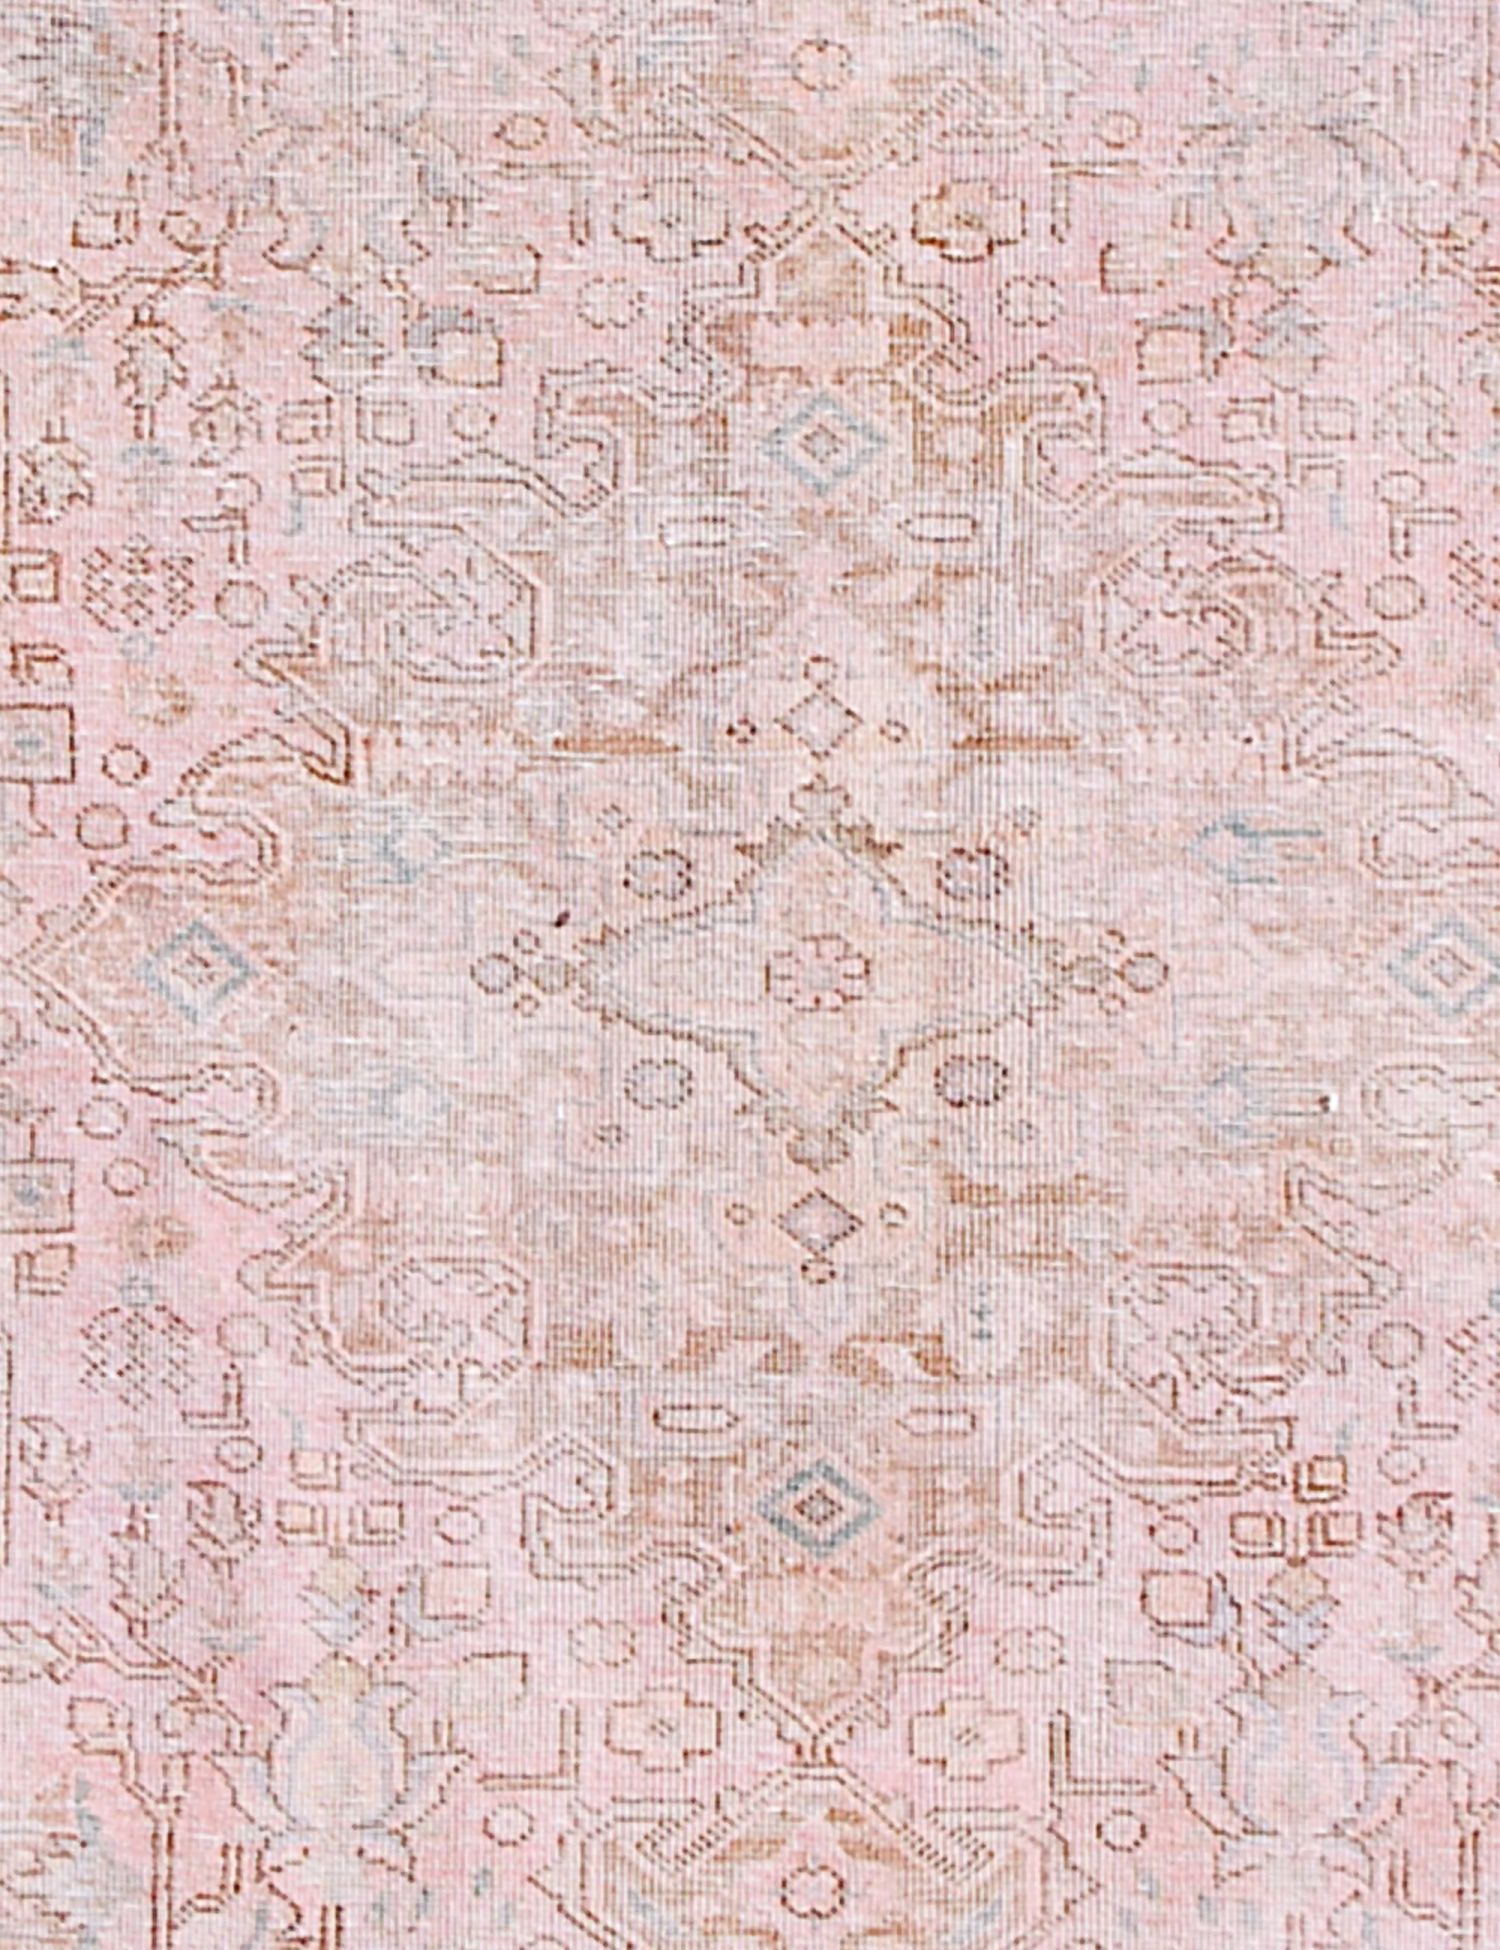 Rund  Vintage Teppich  rosa <br/>170 x 170 cm